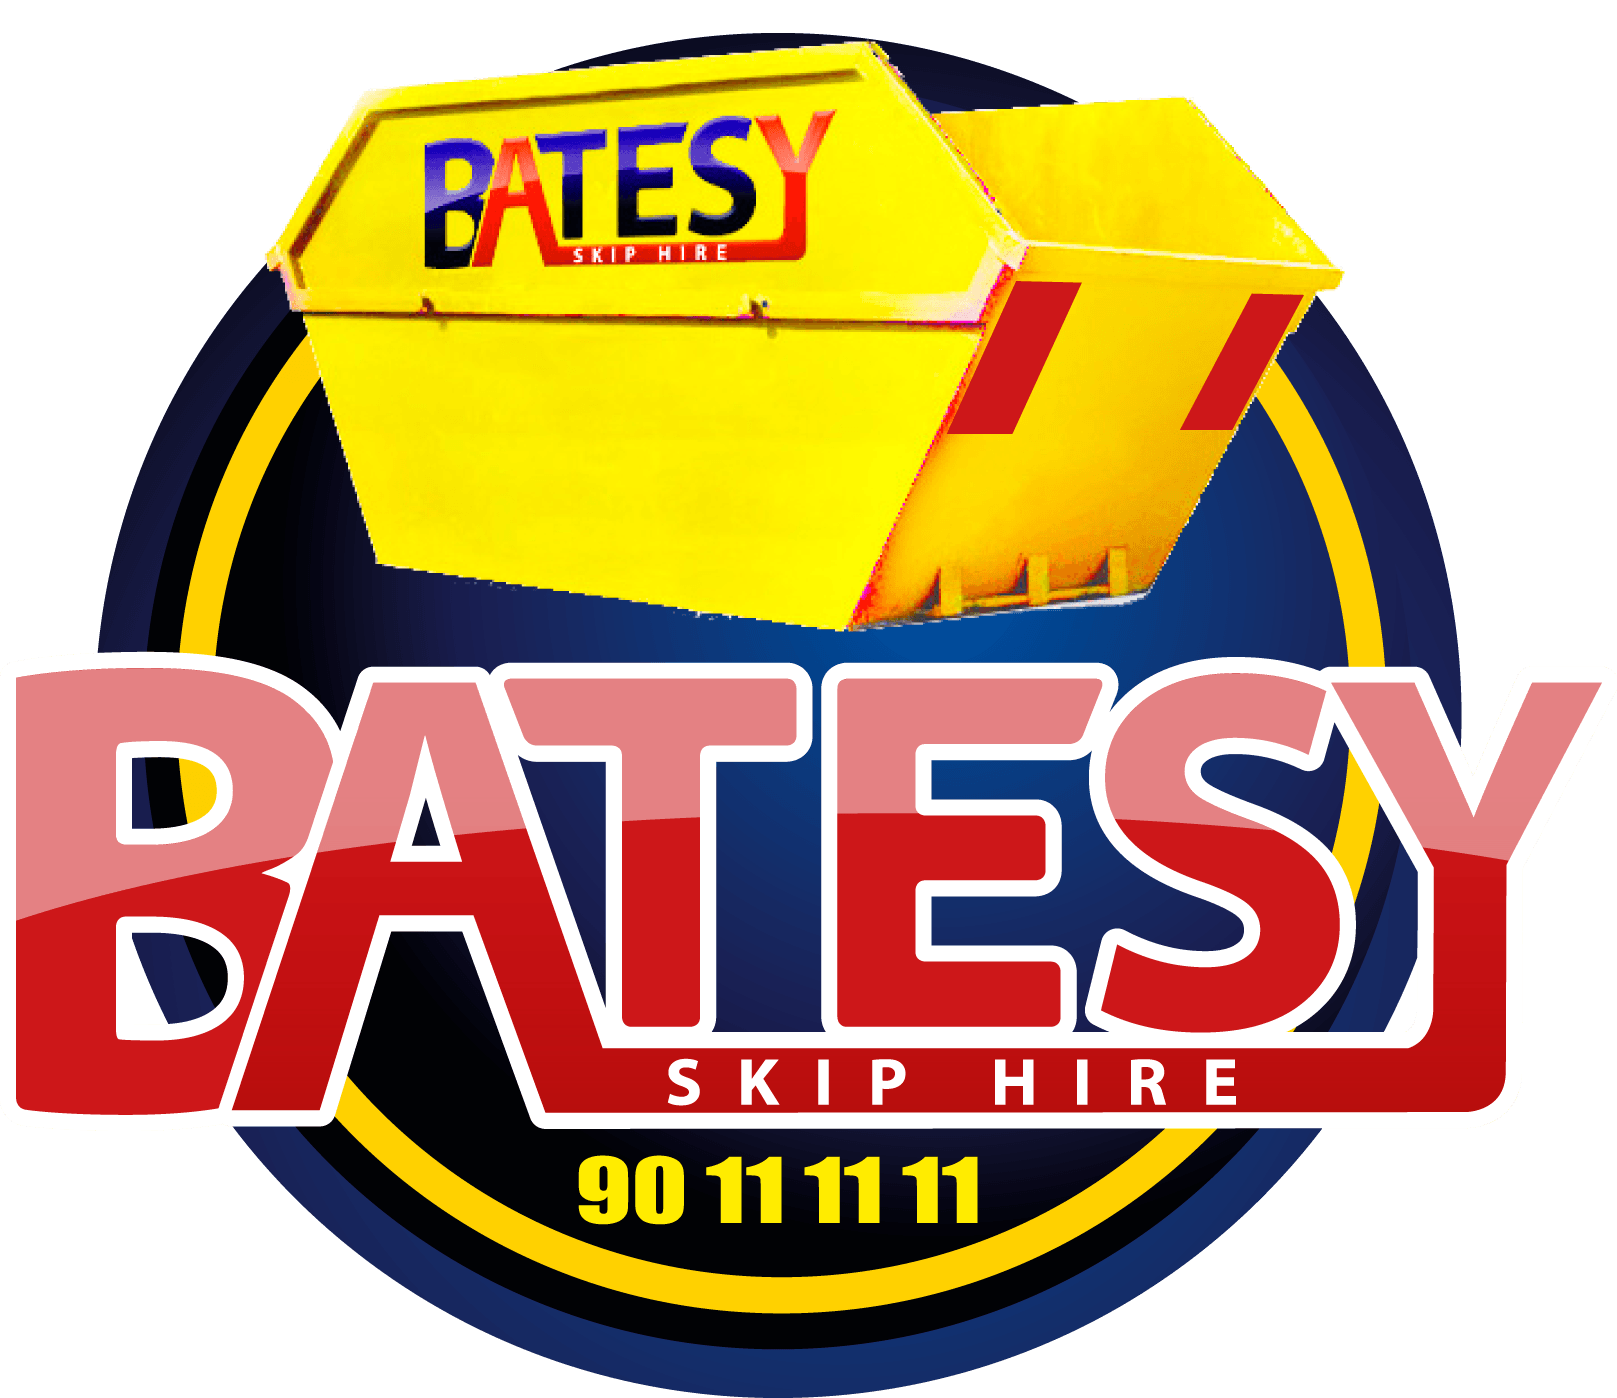 batesy-skip-hire-logo